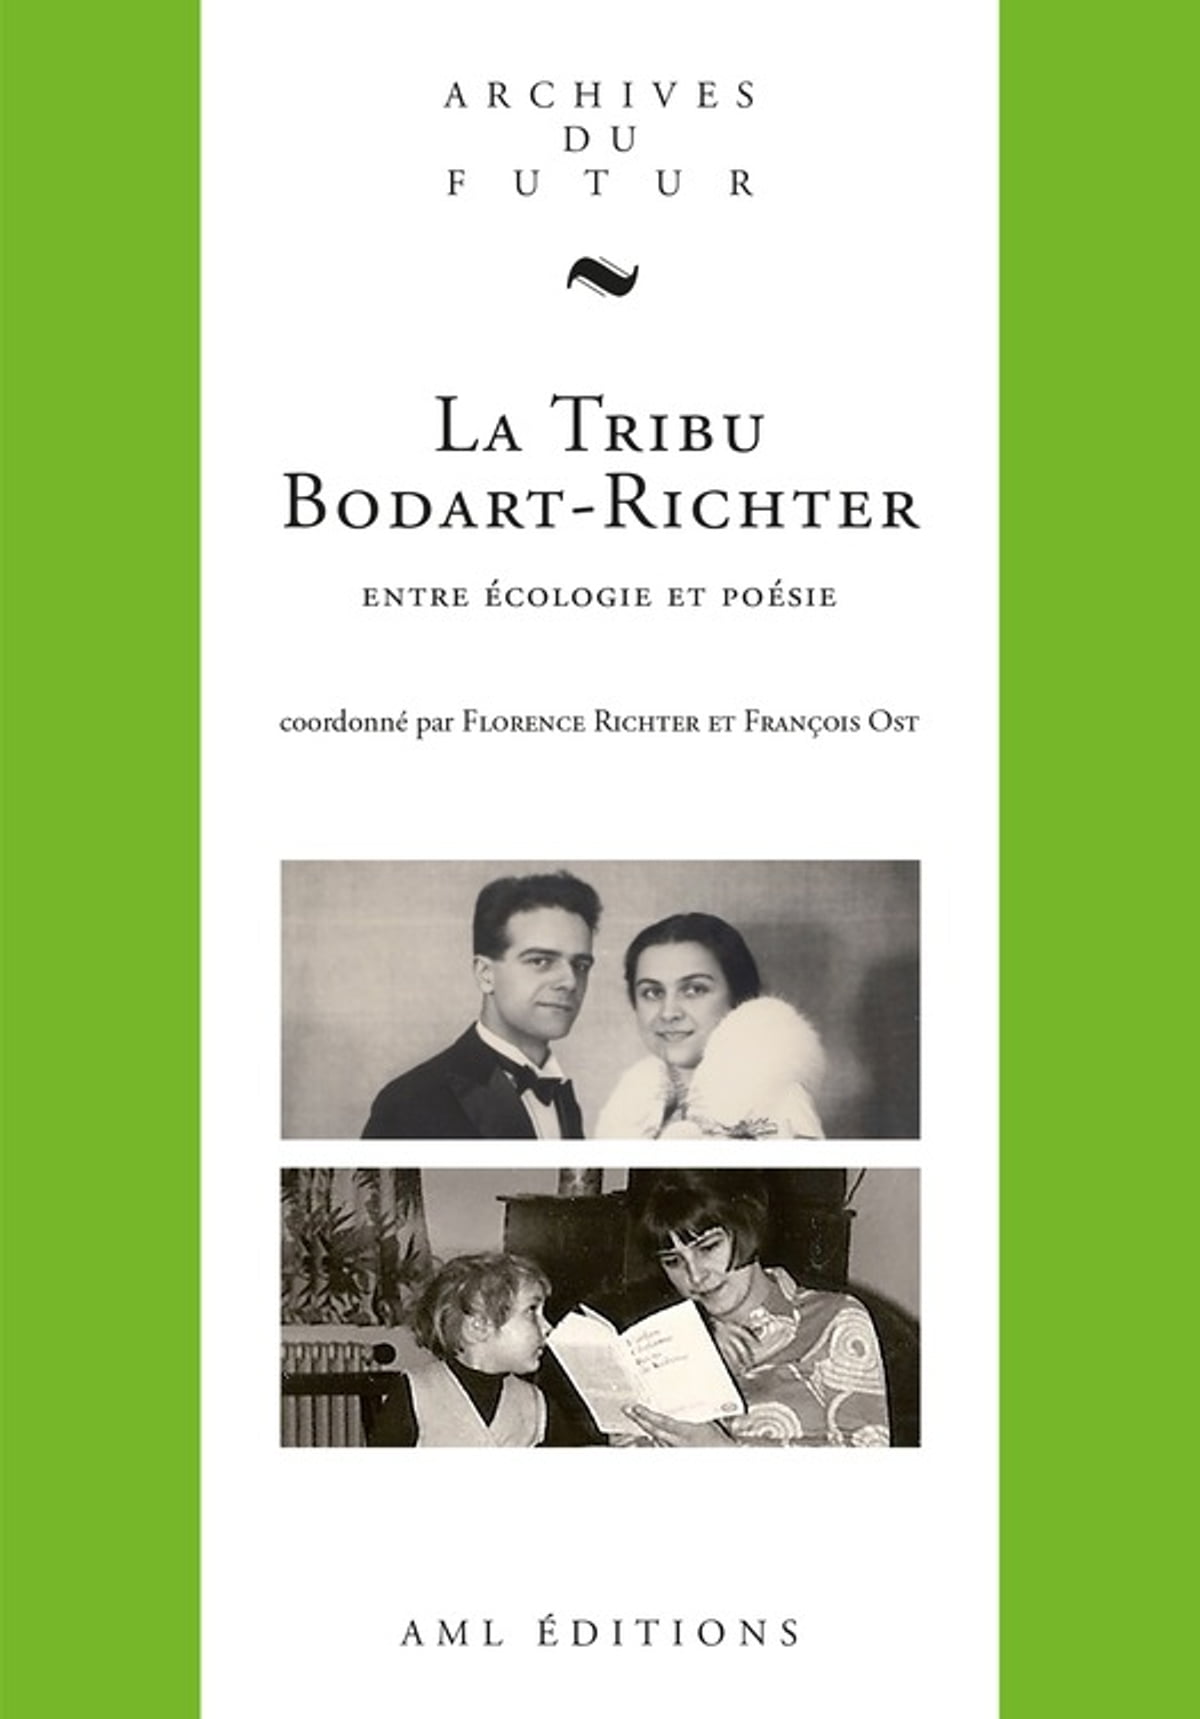 Imagen de portada del libro La tribu Bodart-Richter